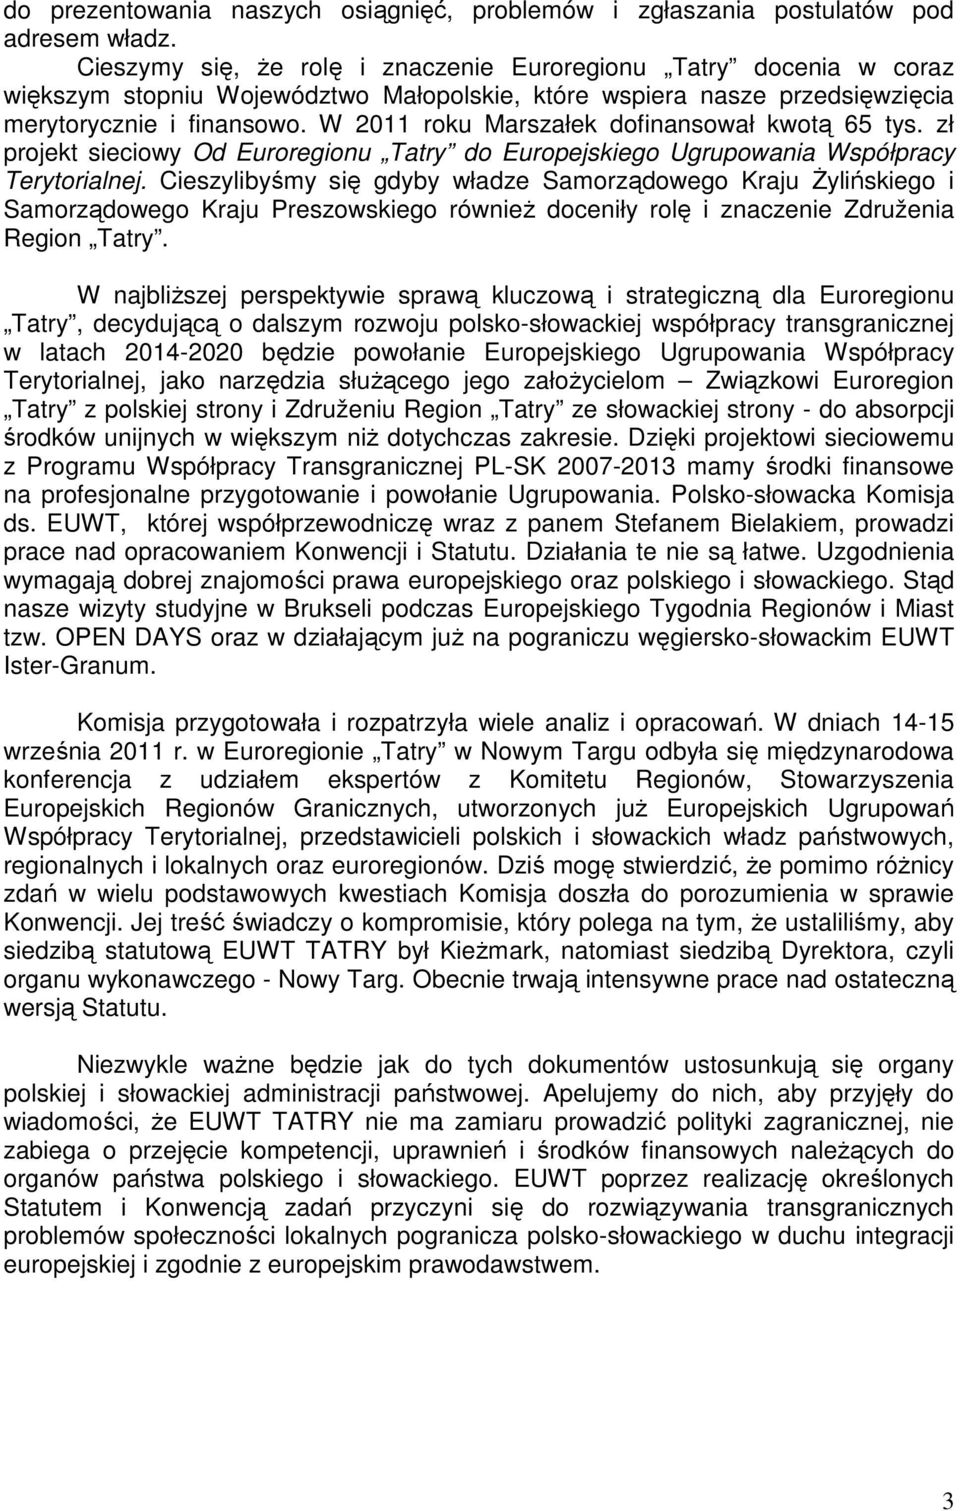 W 2011 roku Marszałek dofinansował kwotą 65 tys. zł projekt sieciowy Od Euroregionu Tatry do Europejskiego Ugrupowania Współpracy Terytorialnej.